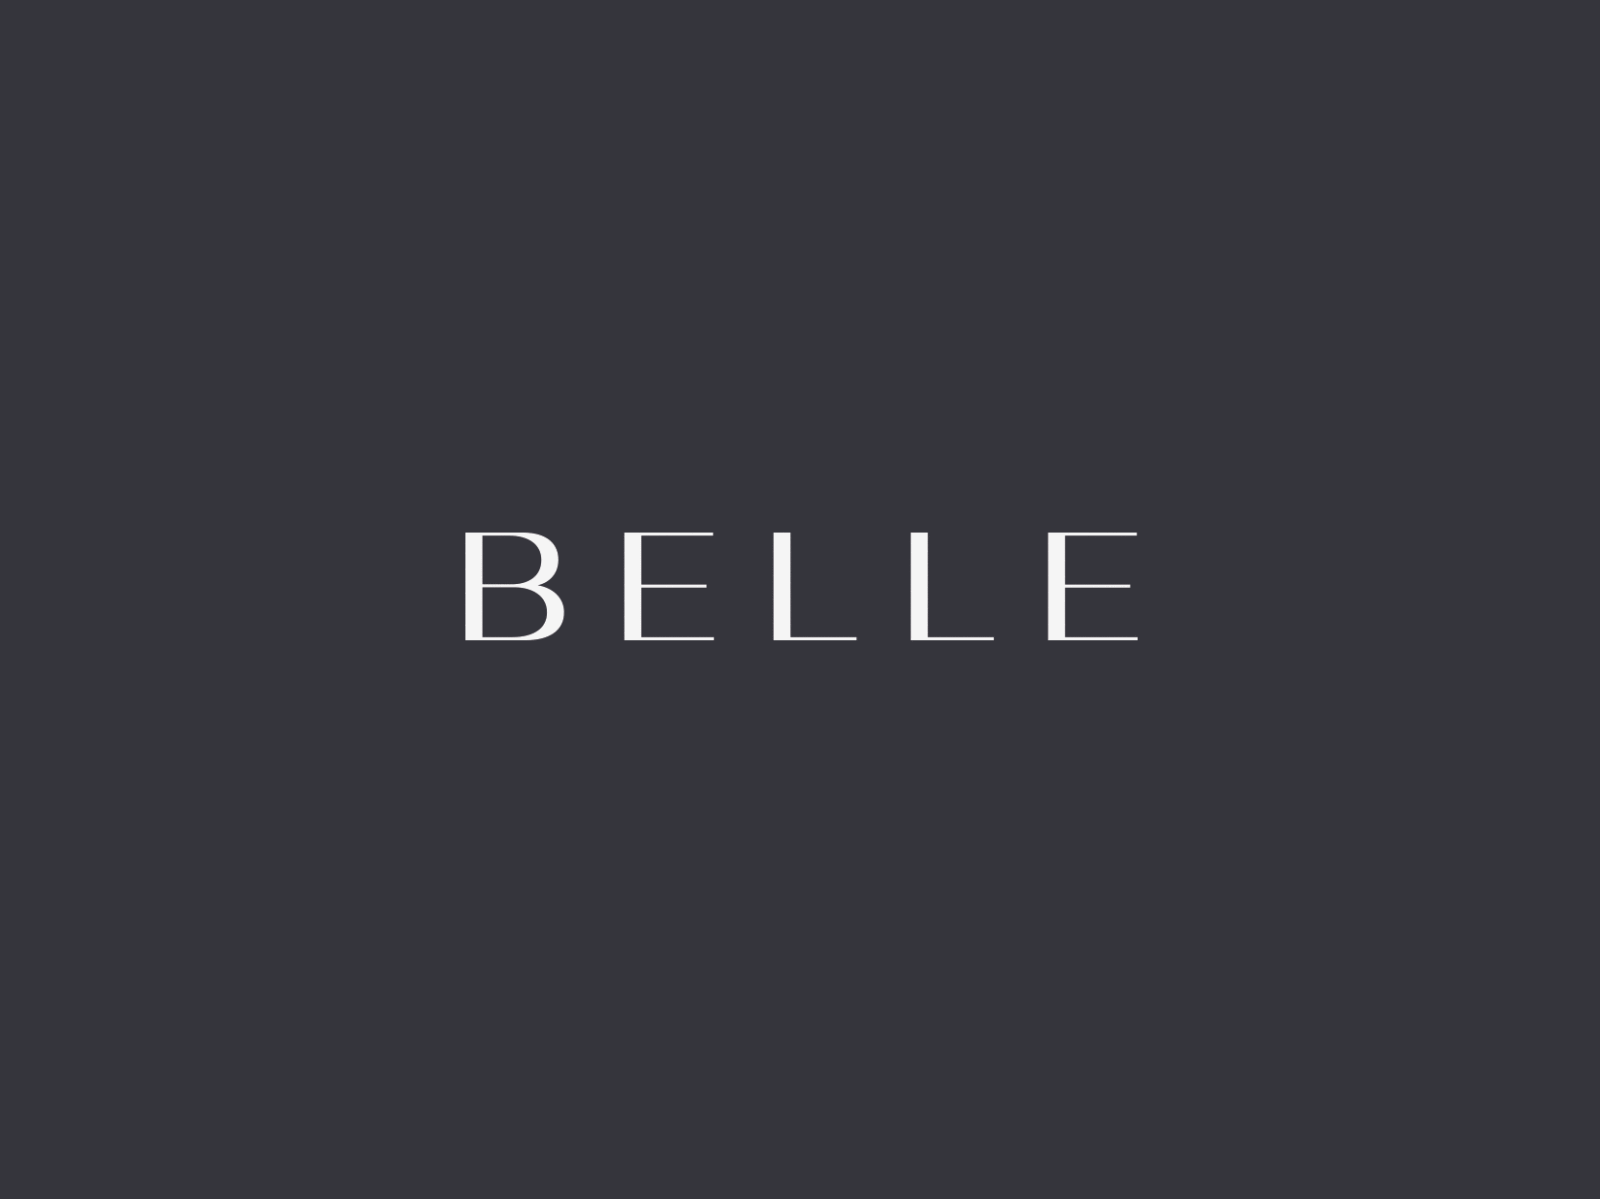 Belle brand design branding corporate identity identity lettermark logo logo design logos logotype mark